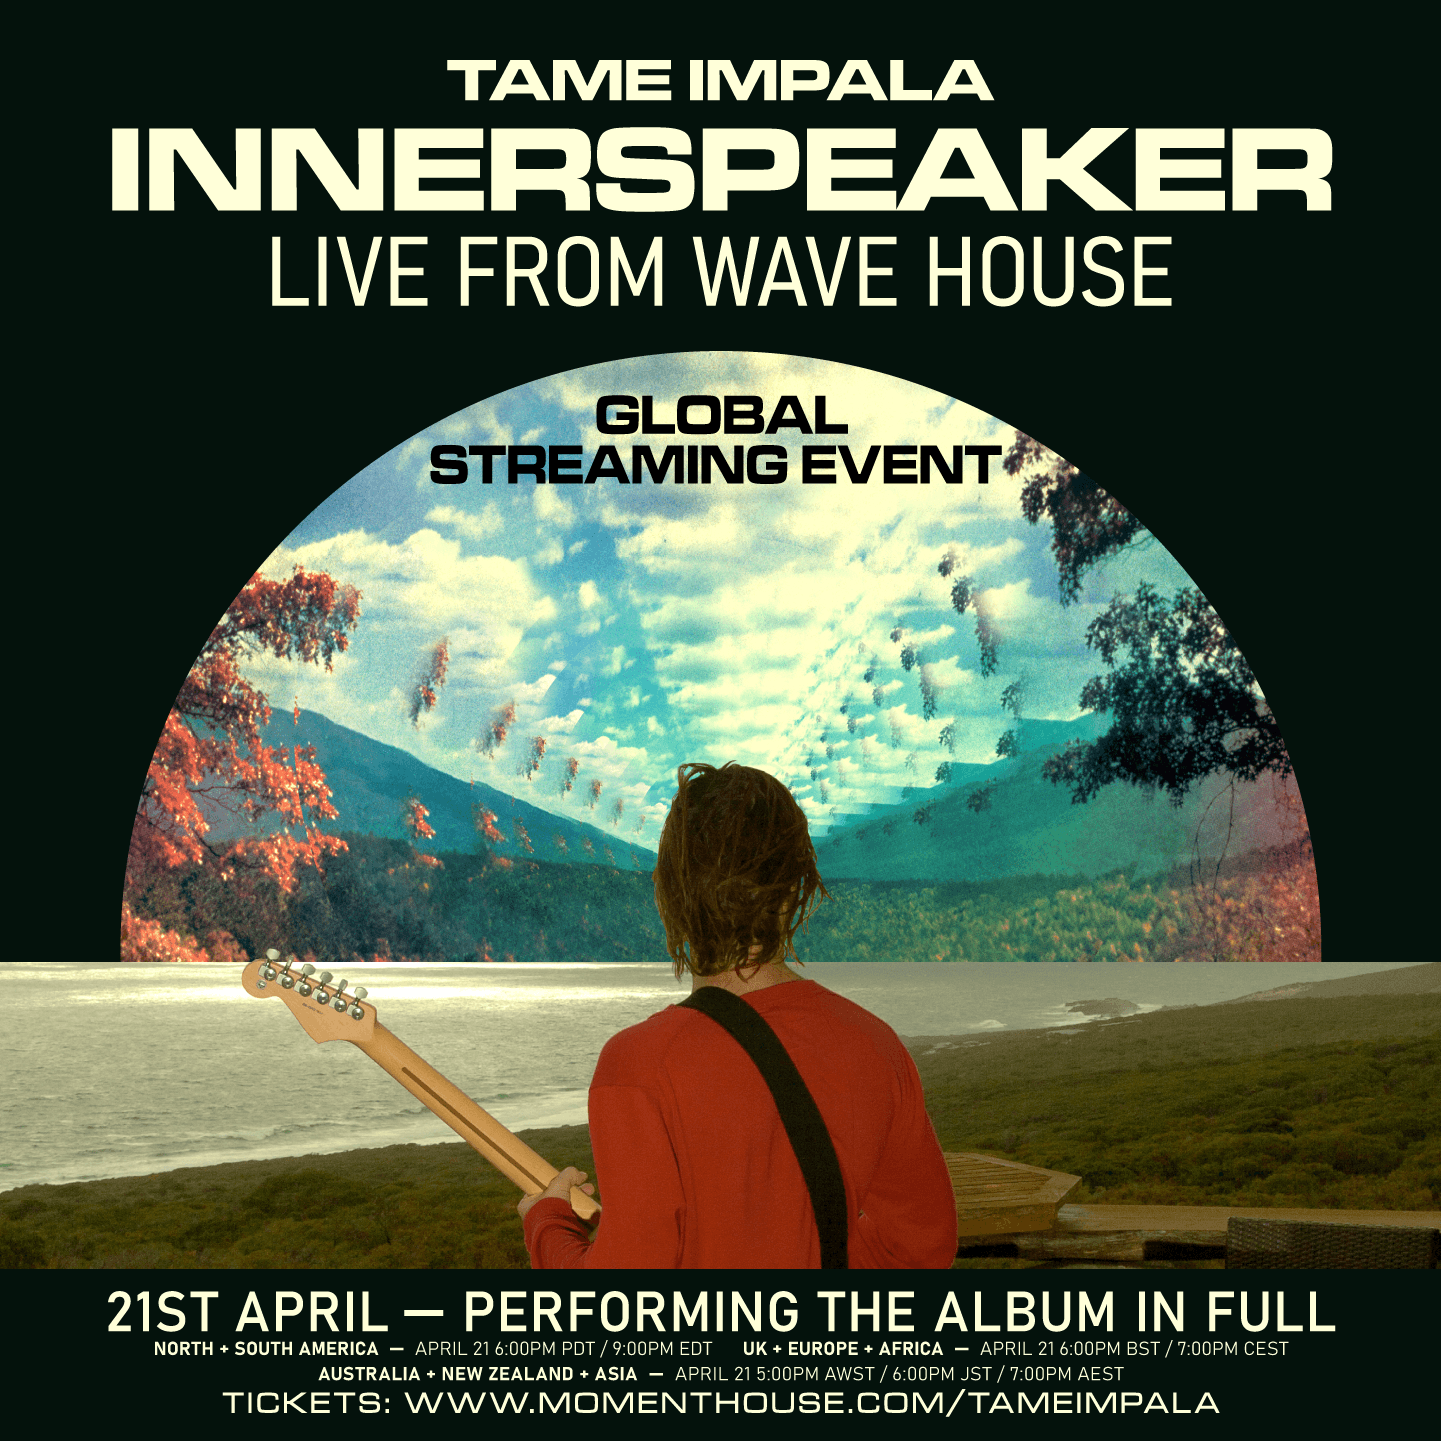 Te regalamos boletos para ver a Tame Impala tocando completo el 'Innerspeaker'